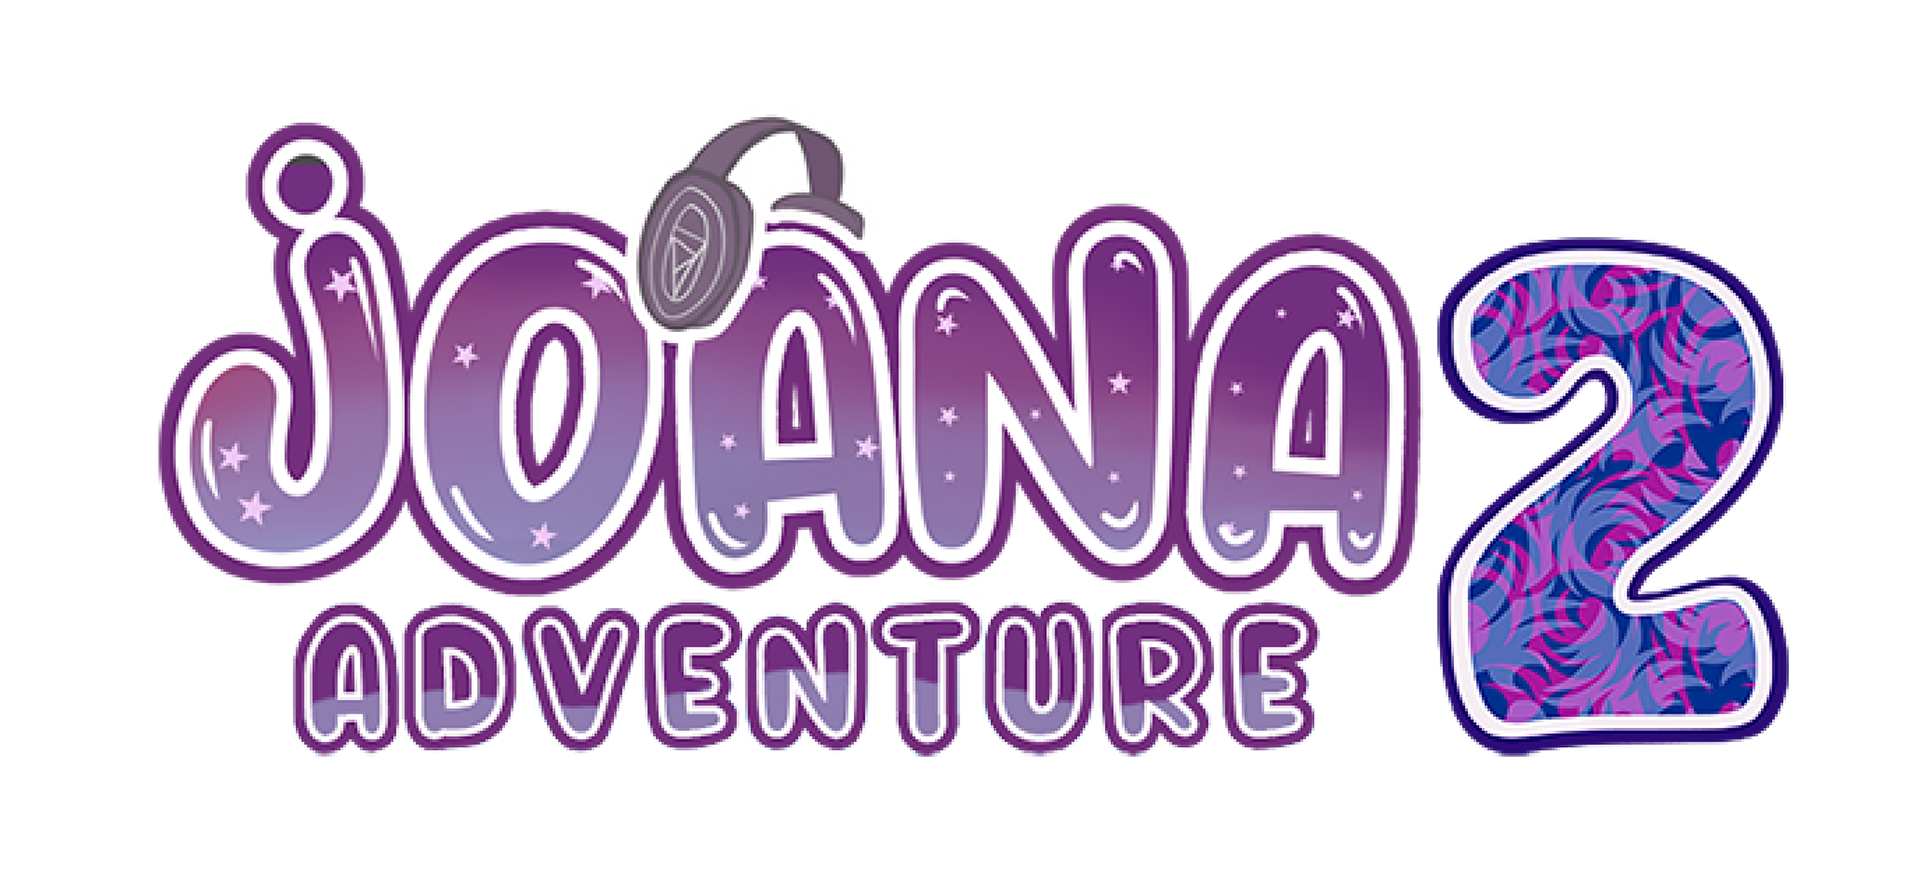 Joana's Adventure 2